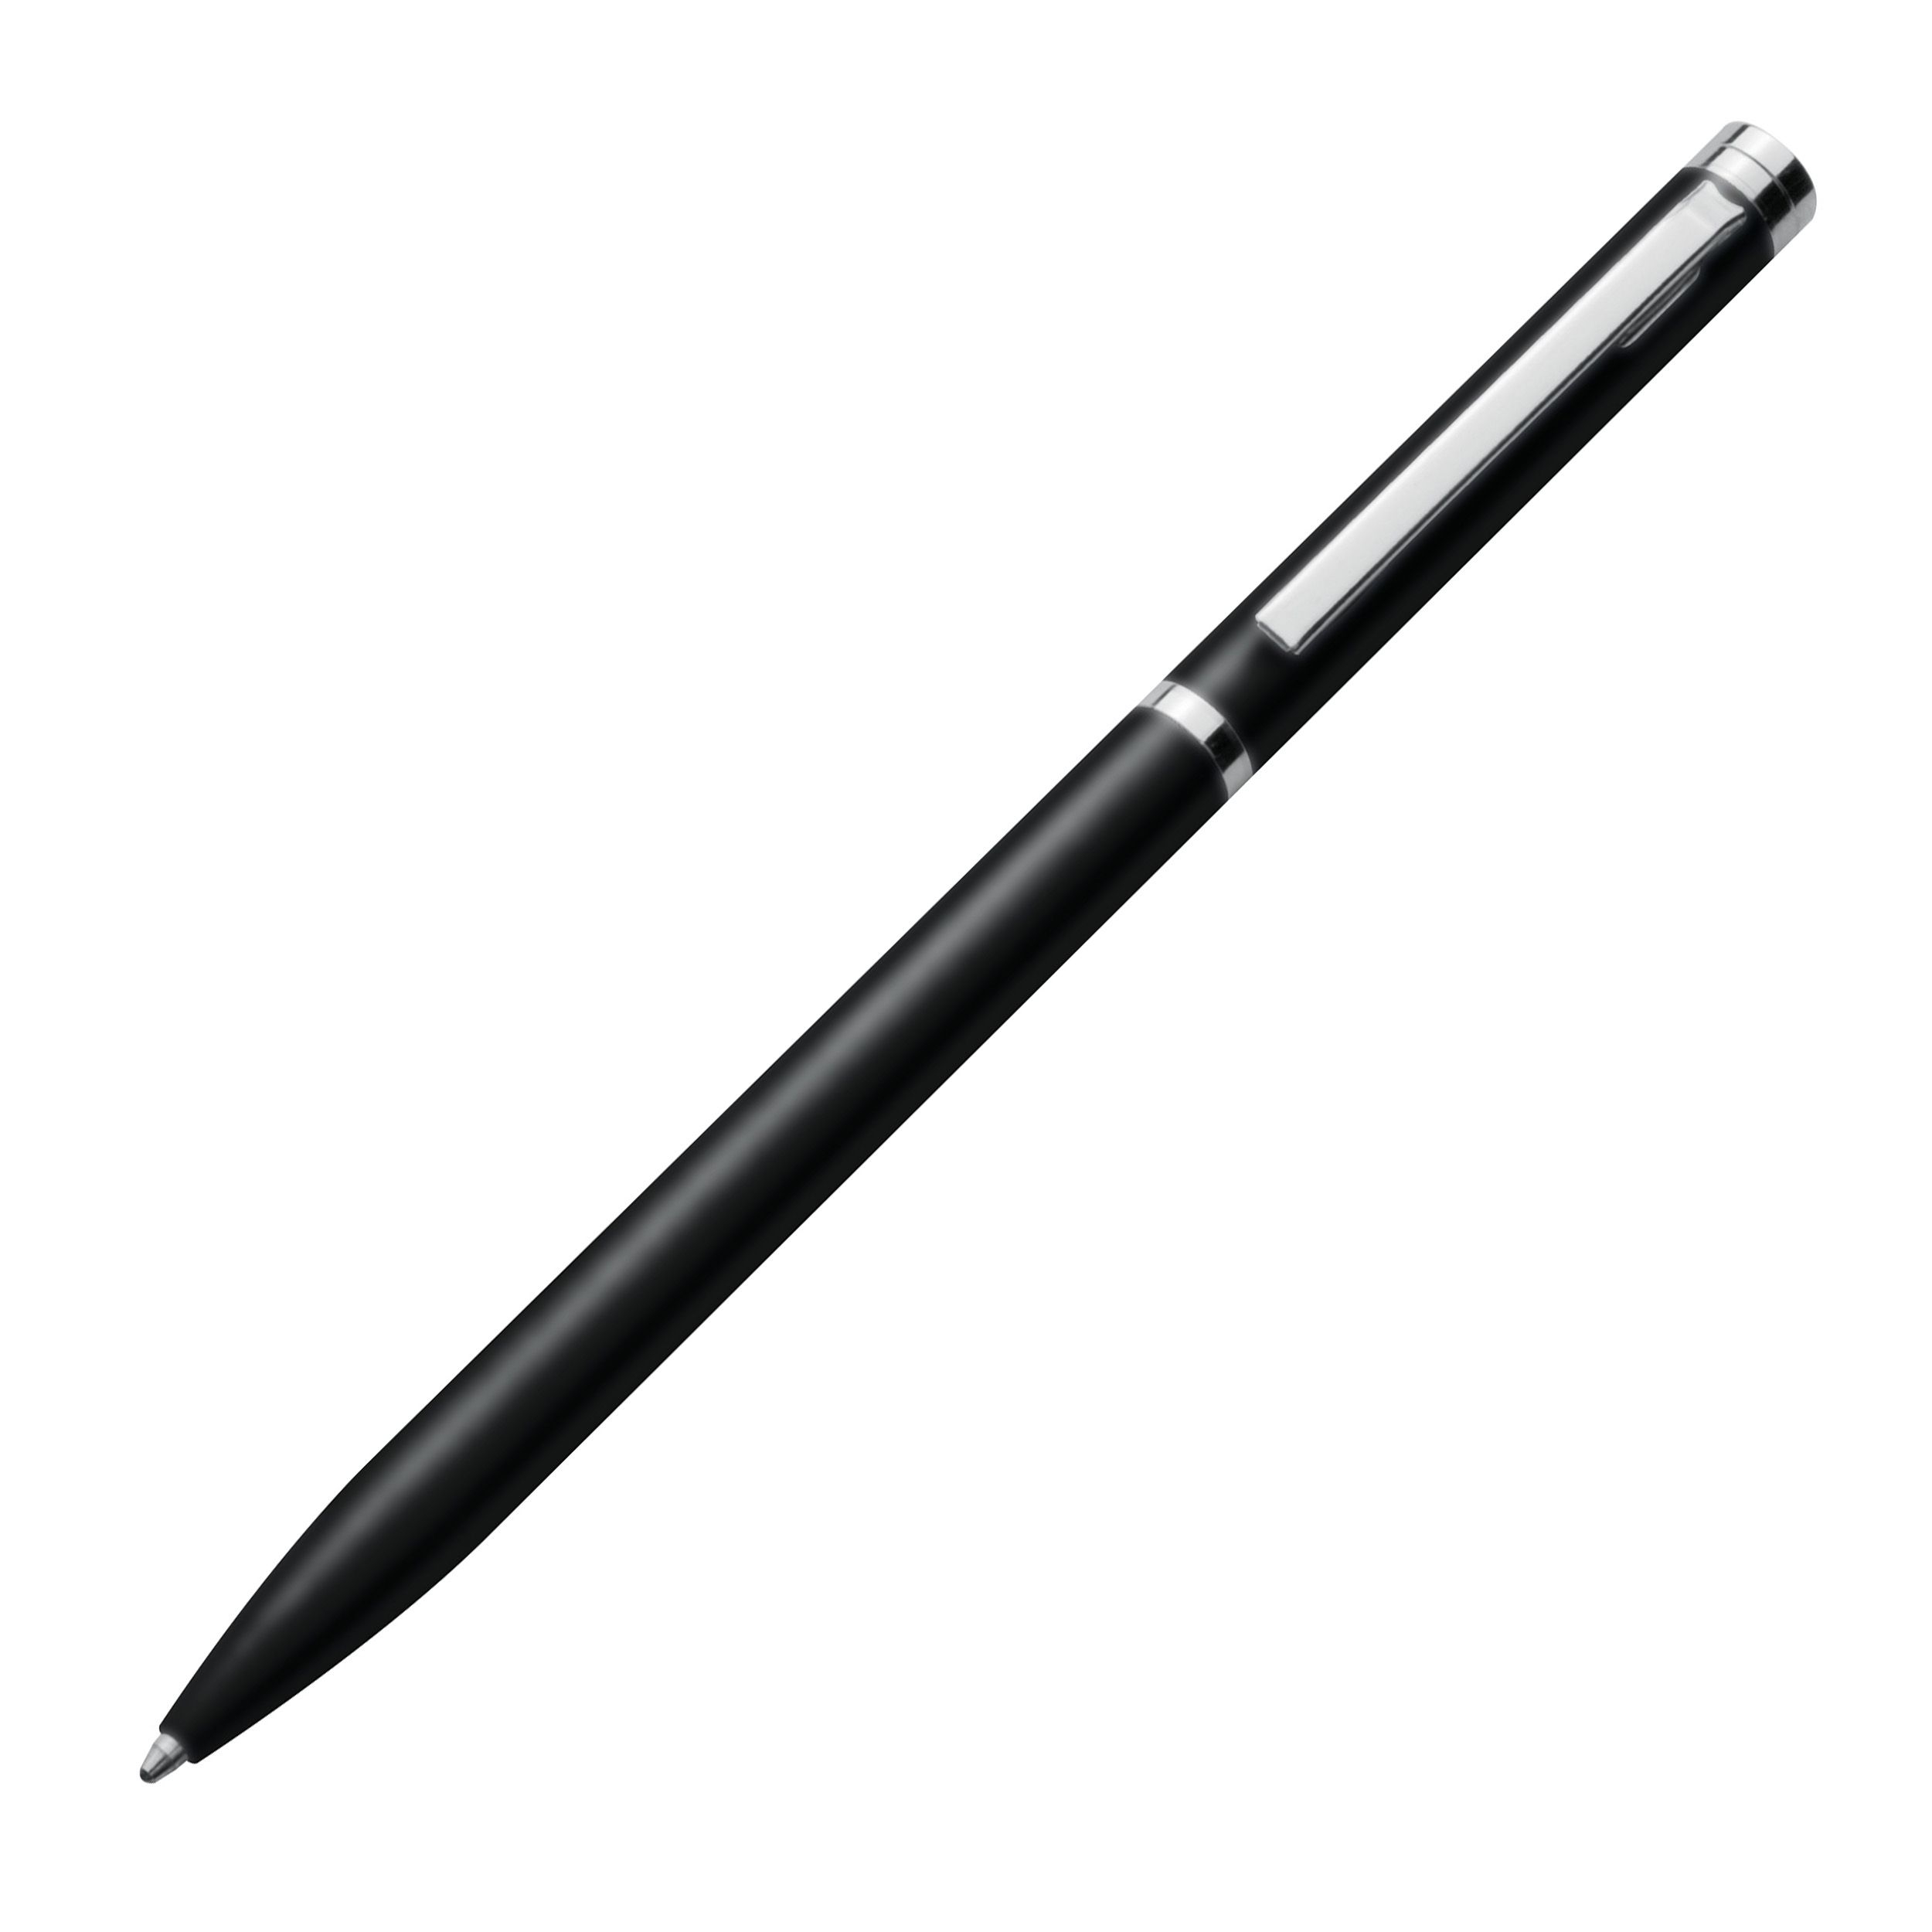 Metall Kugelschreiber in schlanker Form, schwarz